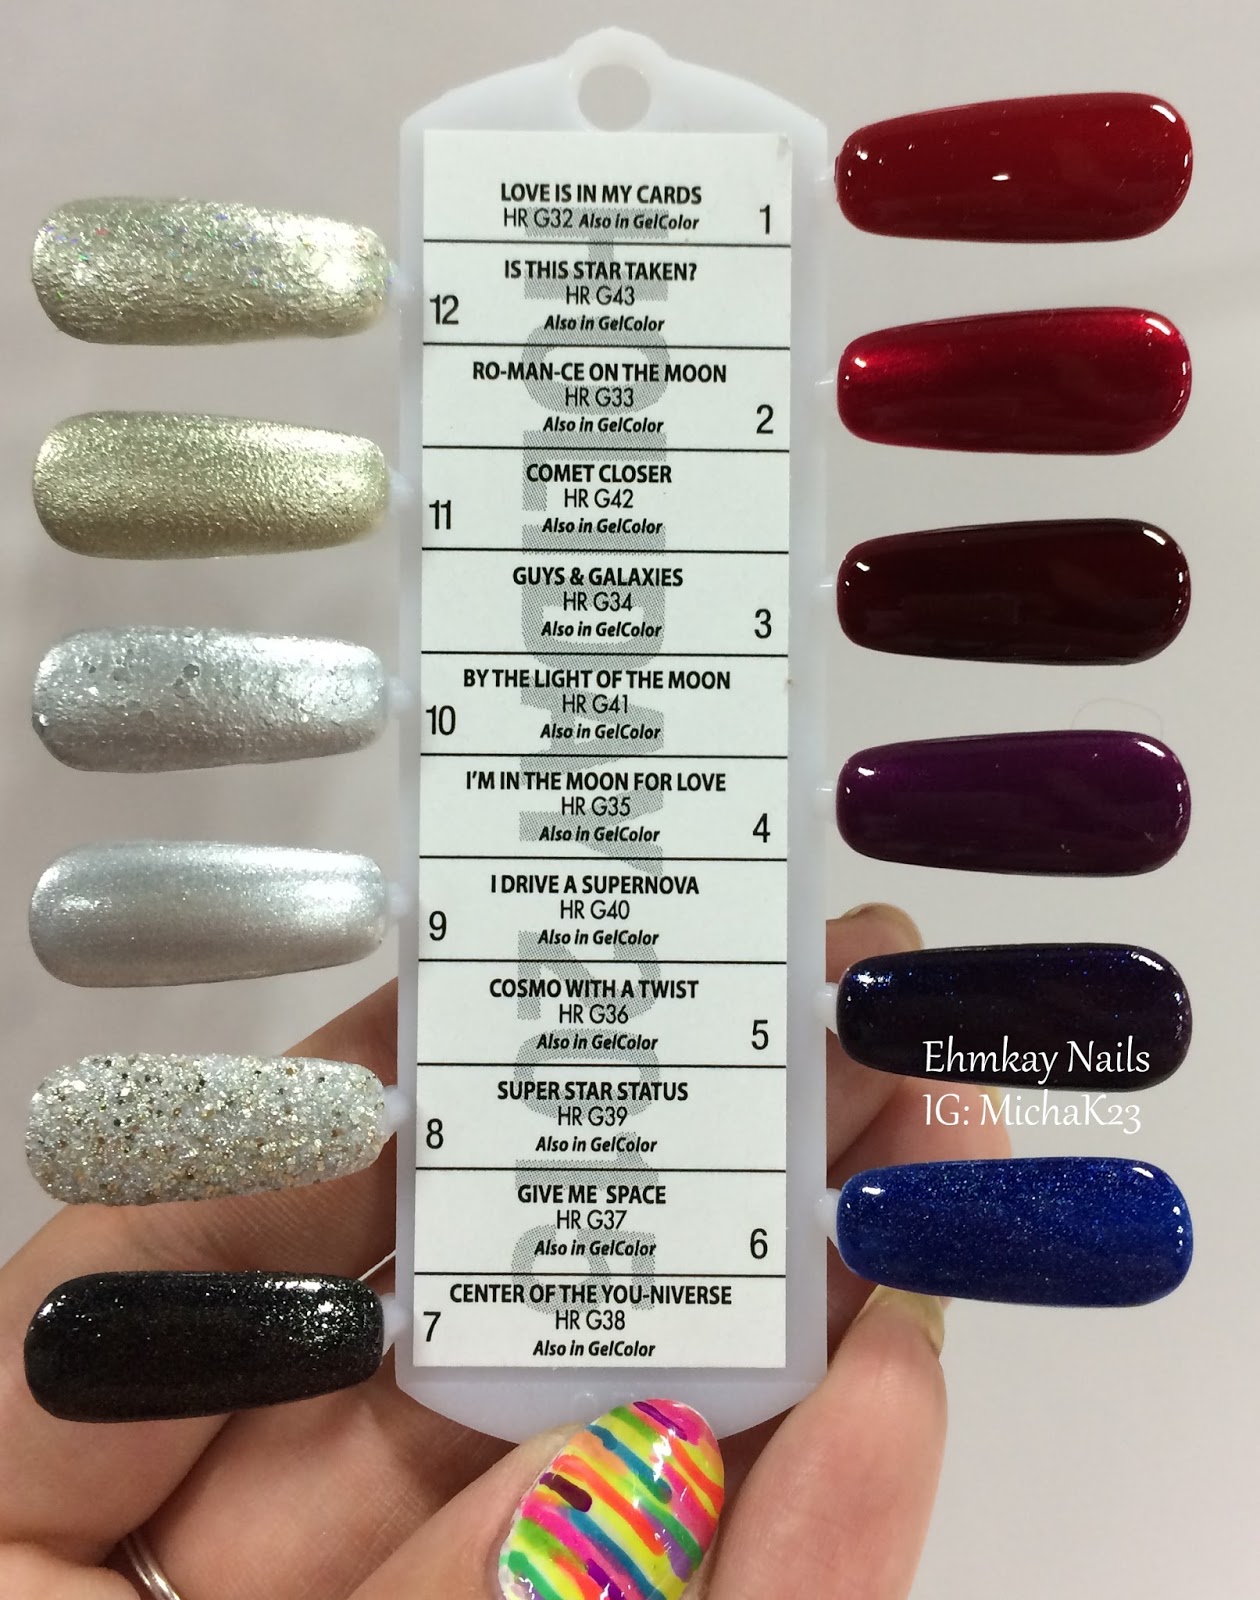 ehmkay nails: Cosmoprof NA 2015 Recap 1: Jessica Cosmetics, Color Club, OPI